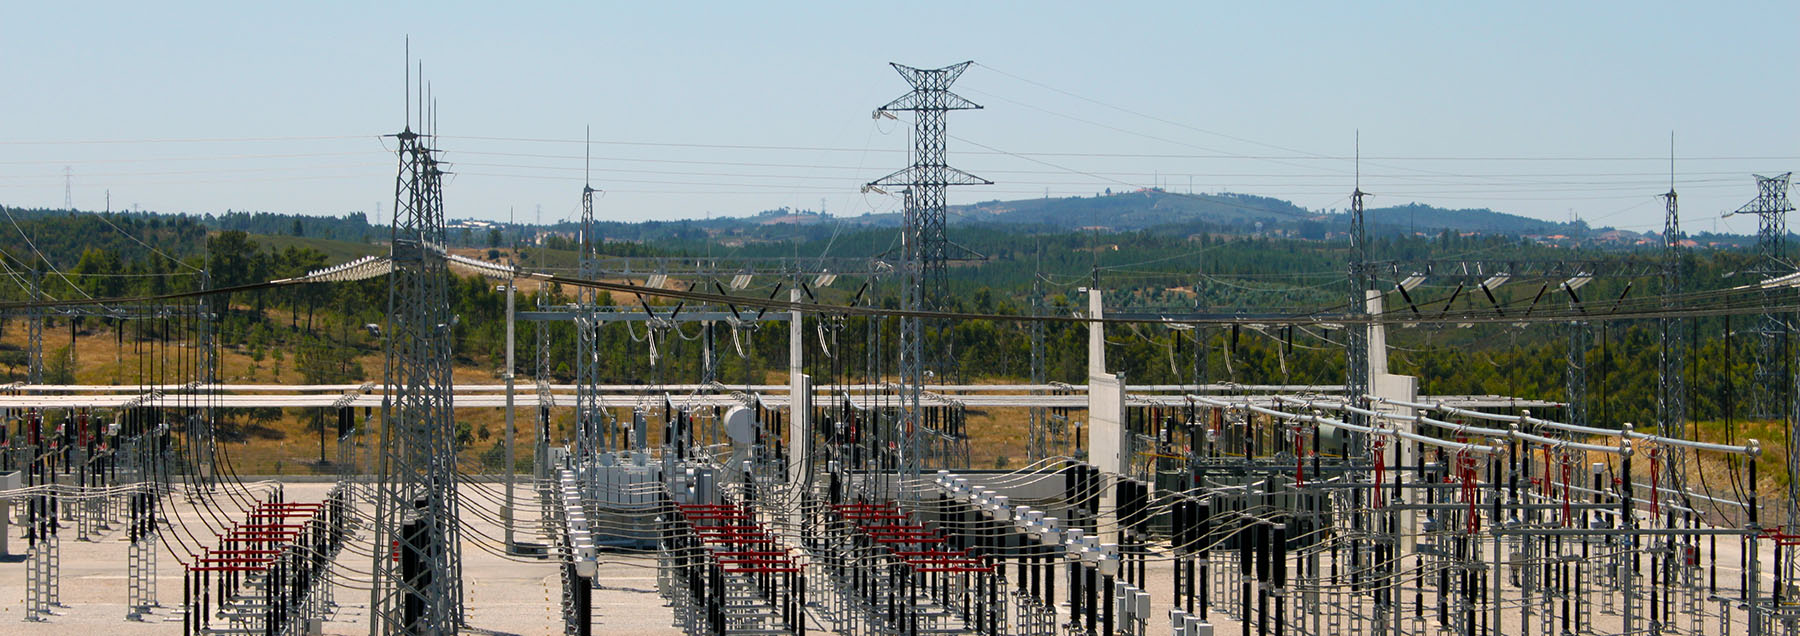 Subestação eléctrica, Subestações eléctricas, electric substation, energia eléctrica 